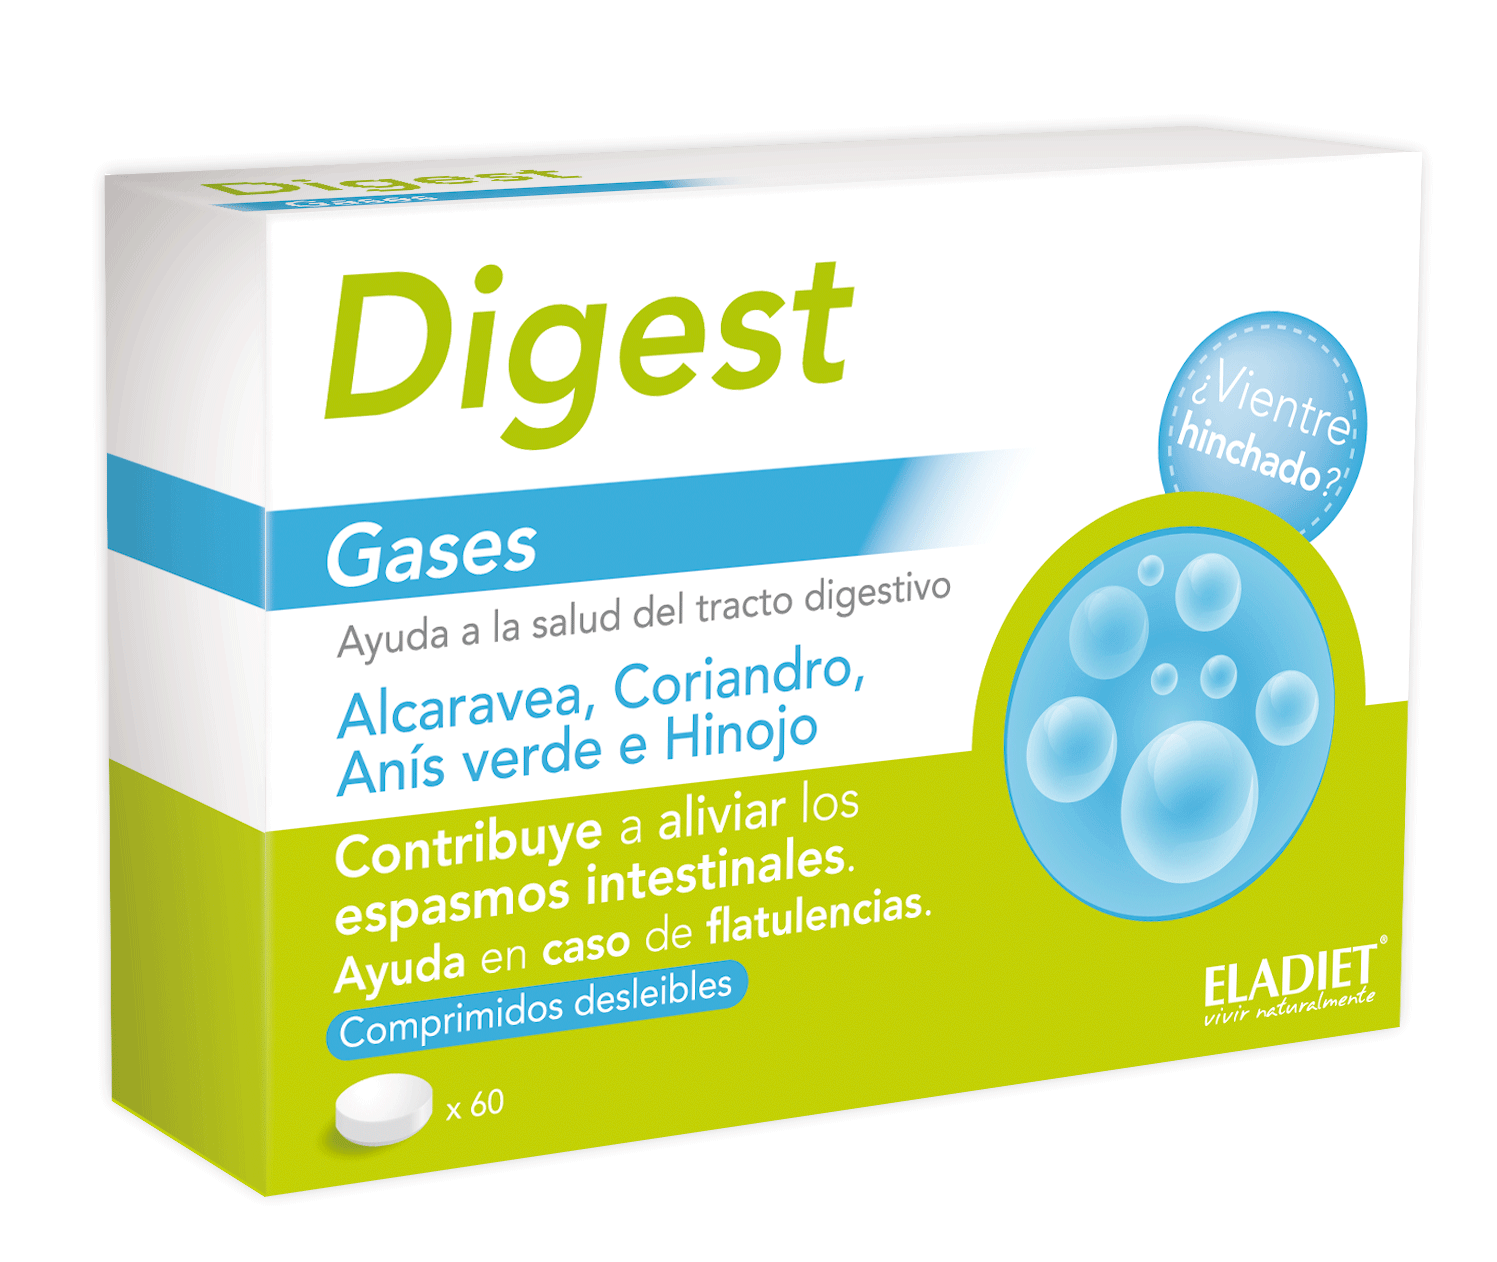 Imagen del producto Digest Gases de Laboratorios Eladiet ( ELADDEPUDIGEPAS )